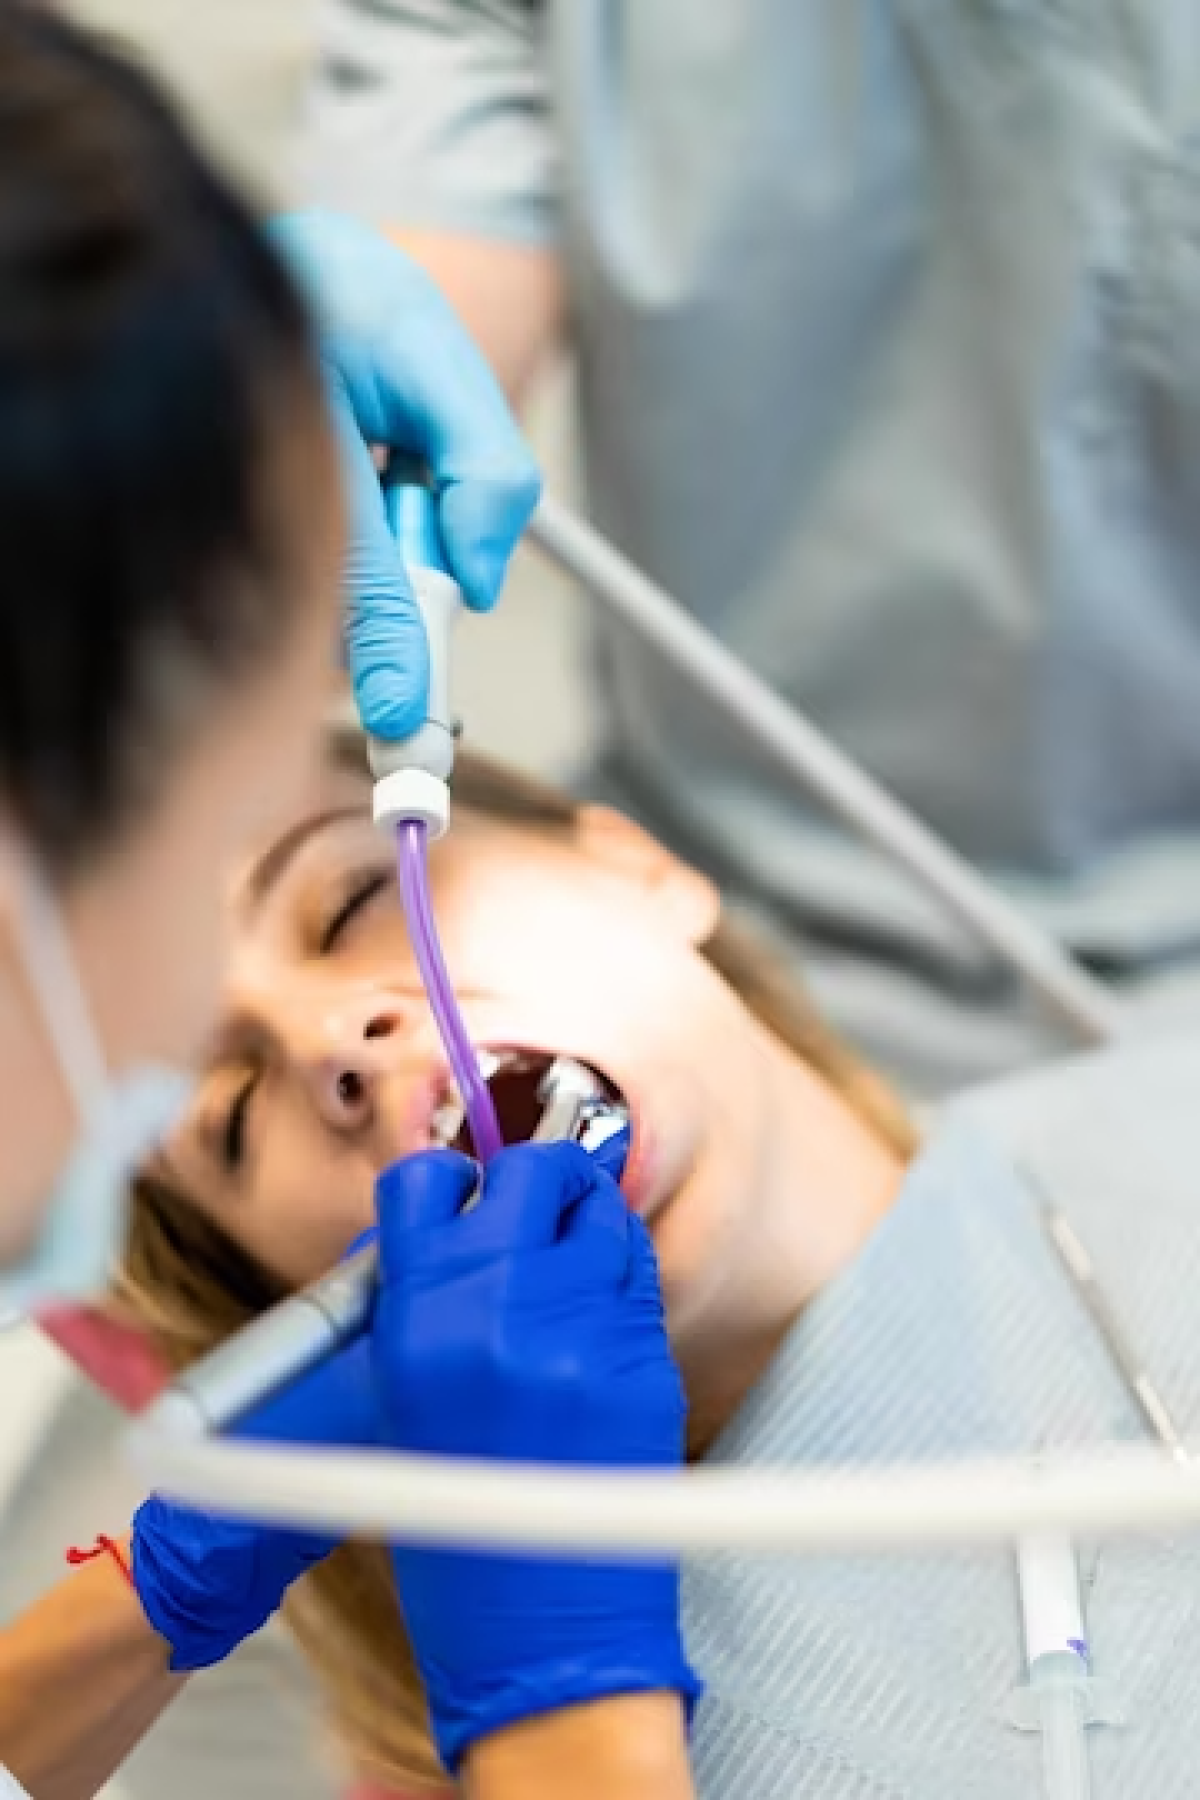 سدیشن (Sedation) یا بیهوشی در دندانپزشکی